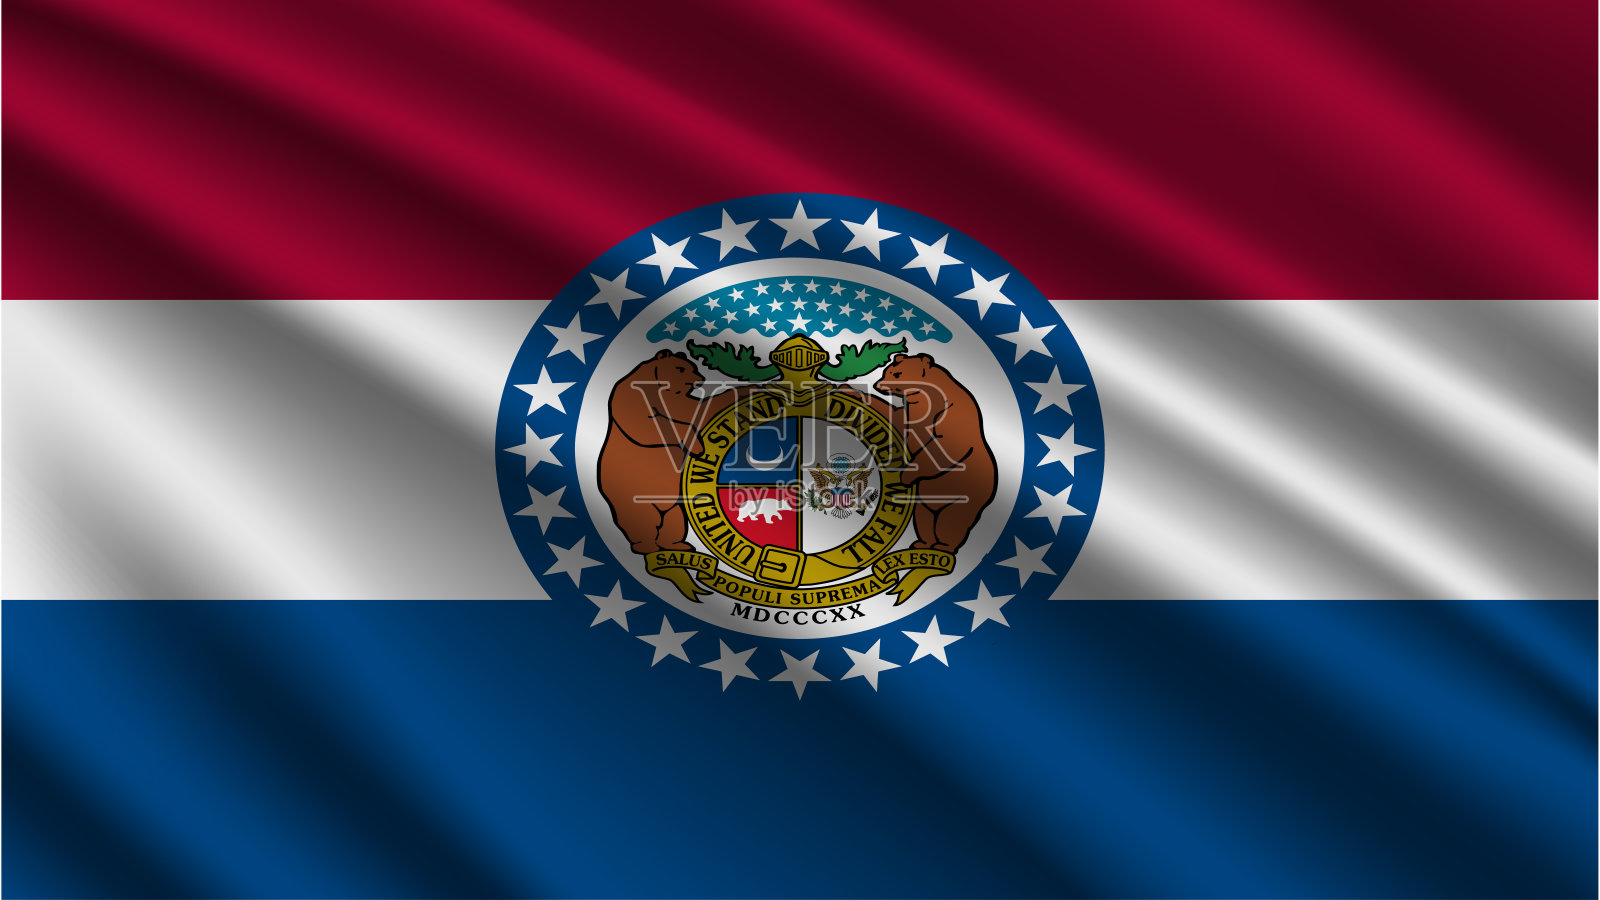 密苏里州-密苏里州旗帜-密苏里州旗帜高细节-国旗密苏里州波浪图案循环元素-织物纹理和无尽的循环-密苏里州循环旗帜-美国州旗帜-挥舞的旗帜插画图片素材